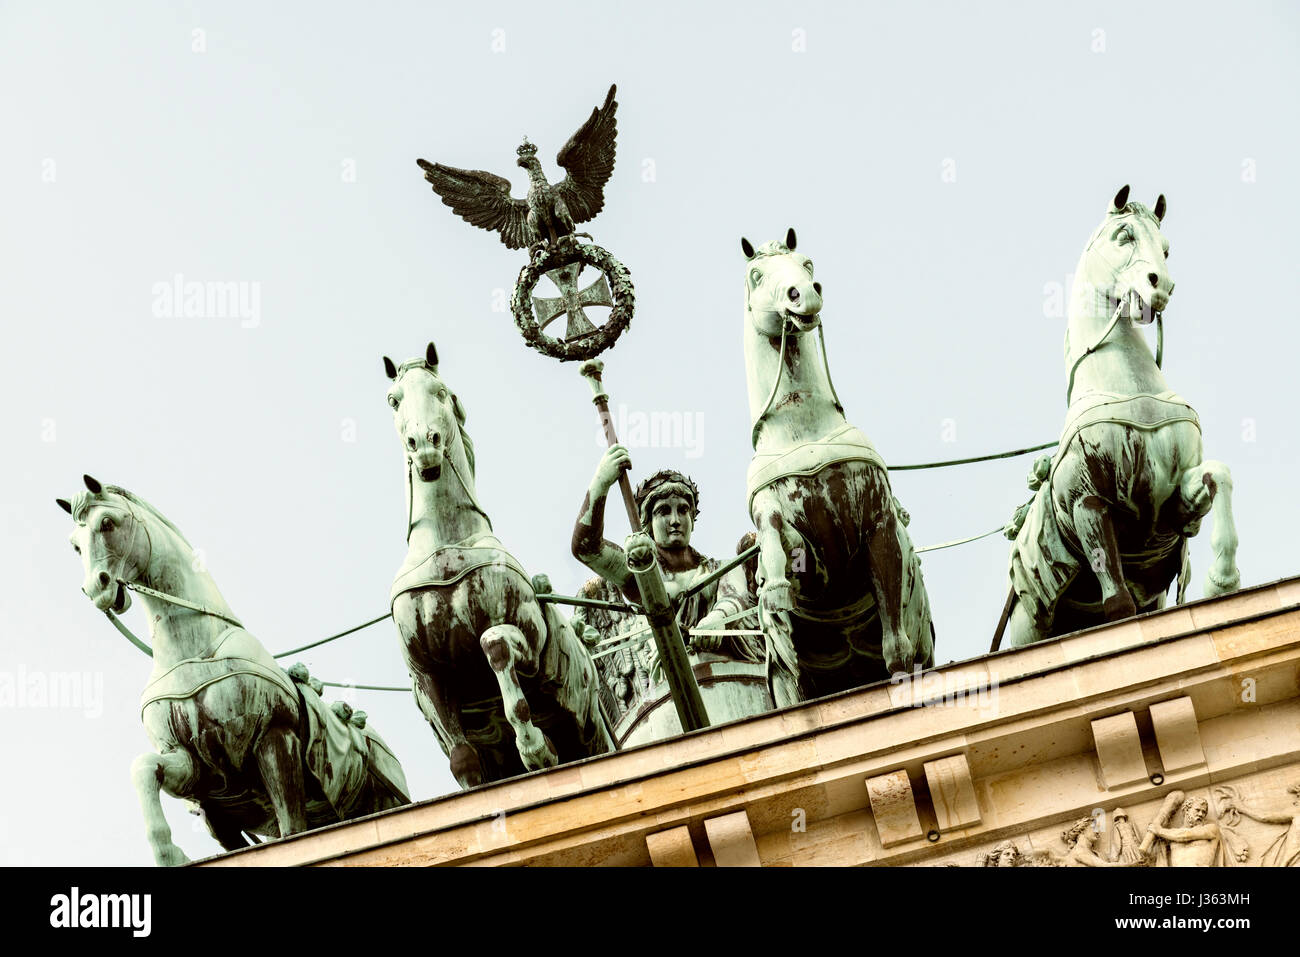 Dettaglio della quadriga statua sulla sommità della porta di Brandeburgo a Berlino, Germania Foto Stock